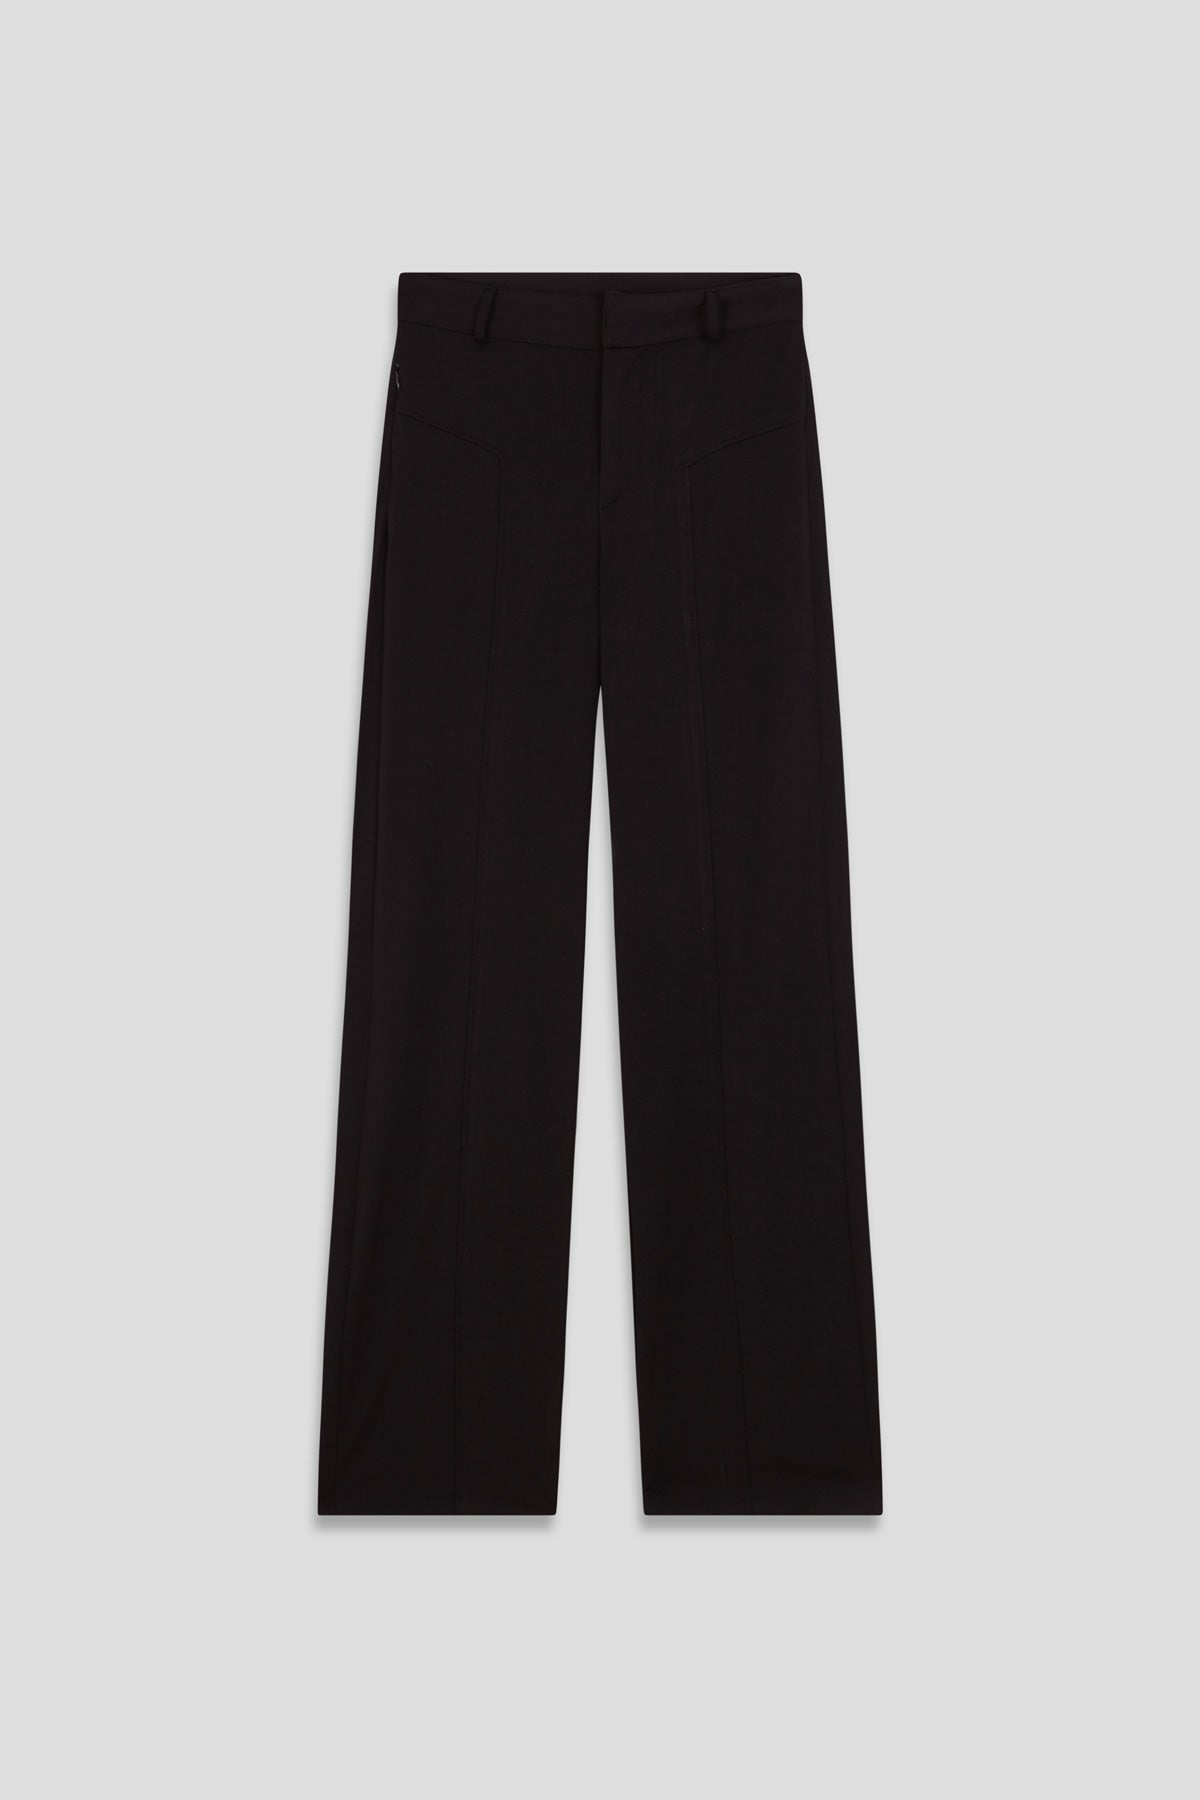 Pantalón de mujer negro de Sepiia, versátil y elegante, resistente a manchas y olores. Foto prenda plano